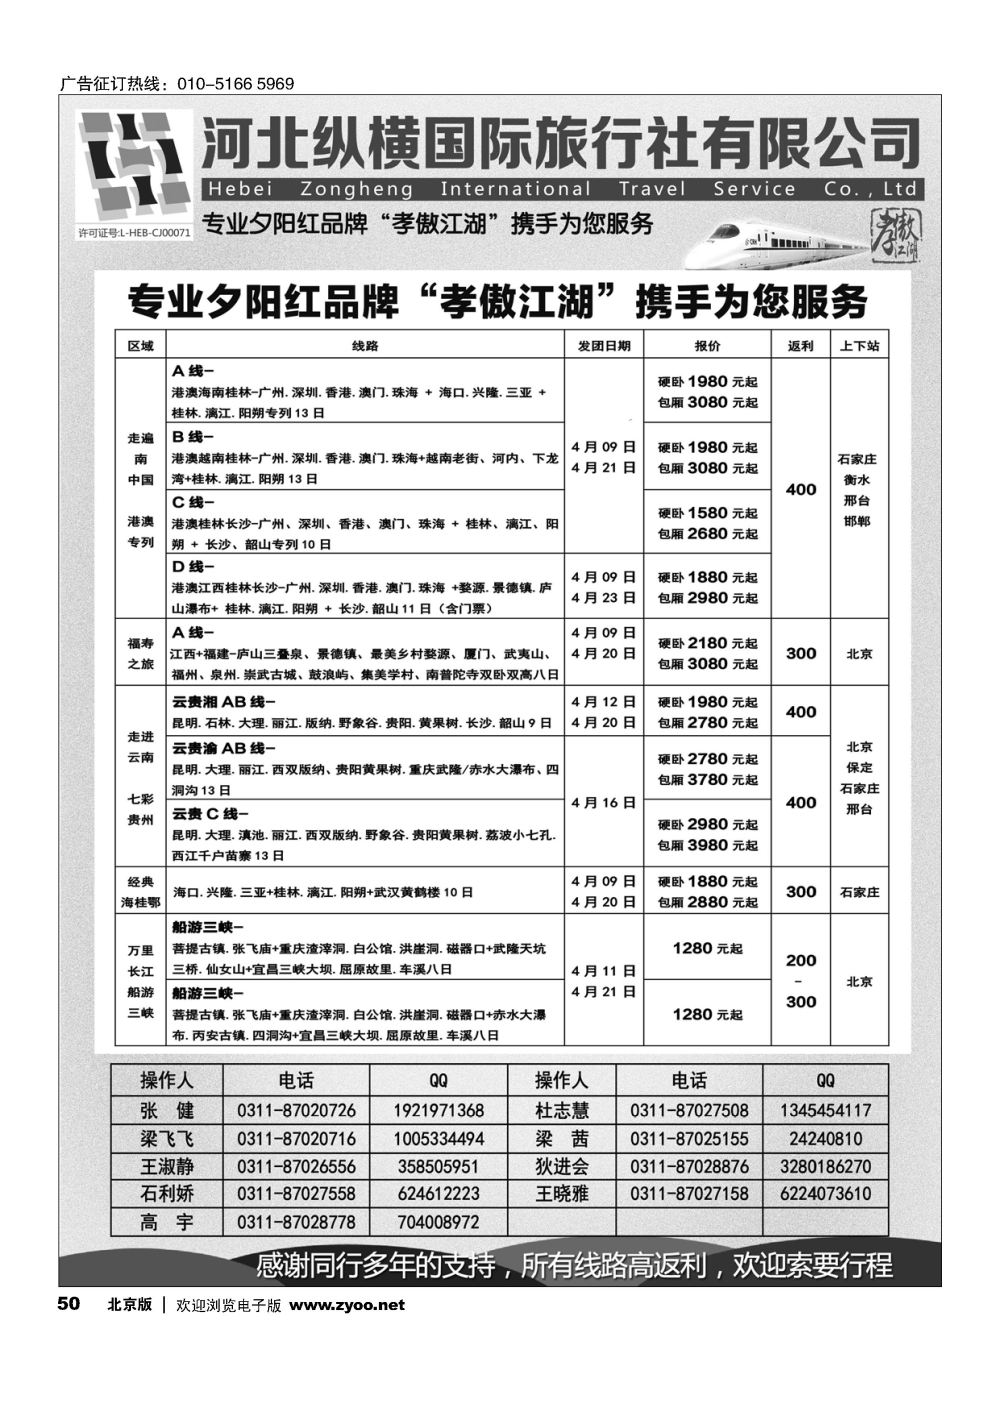 50河北纵横国际旅行社-夕阳红专列